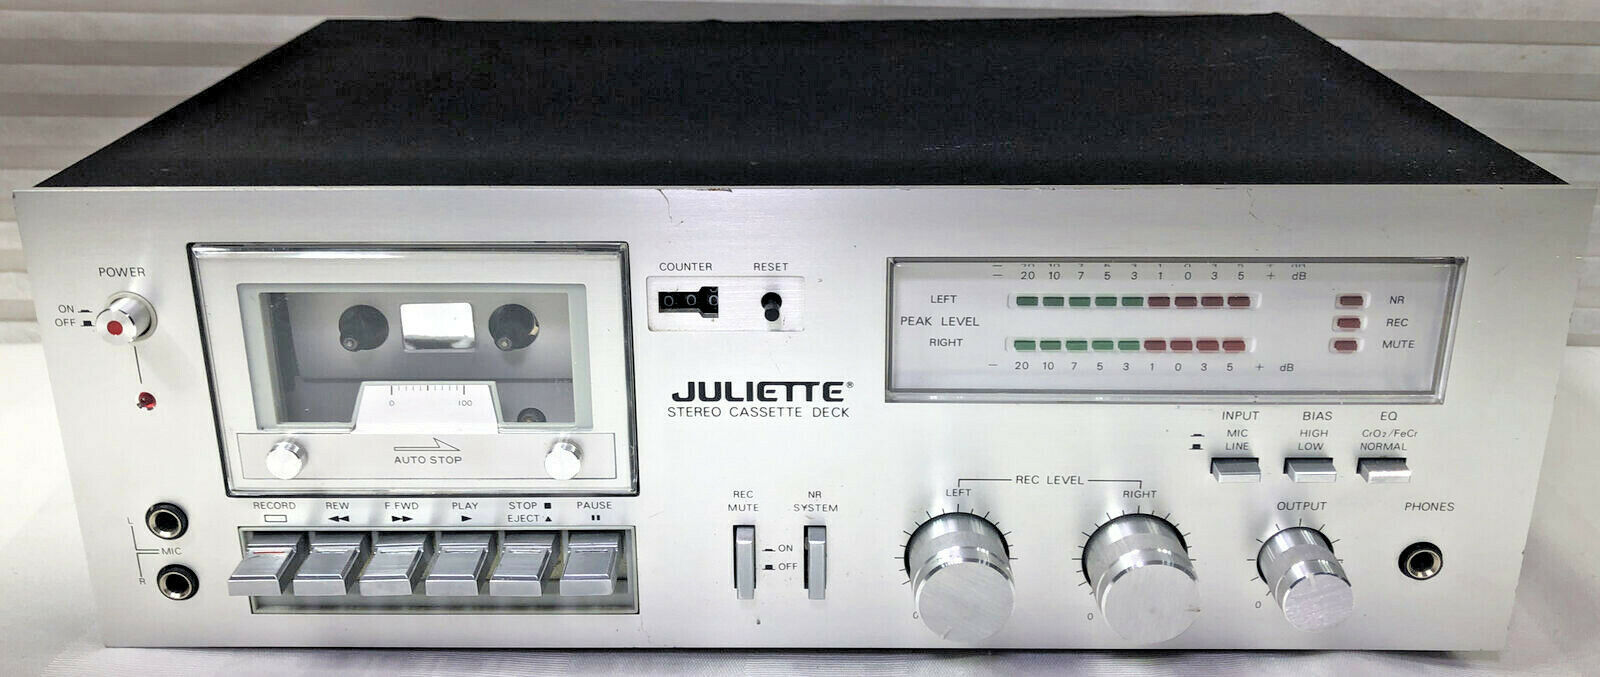 Primary image for Juliette Model JD-5000 Vintage Stereo Cassette Deck